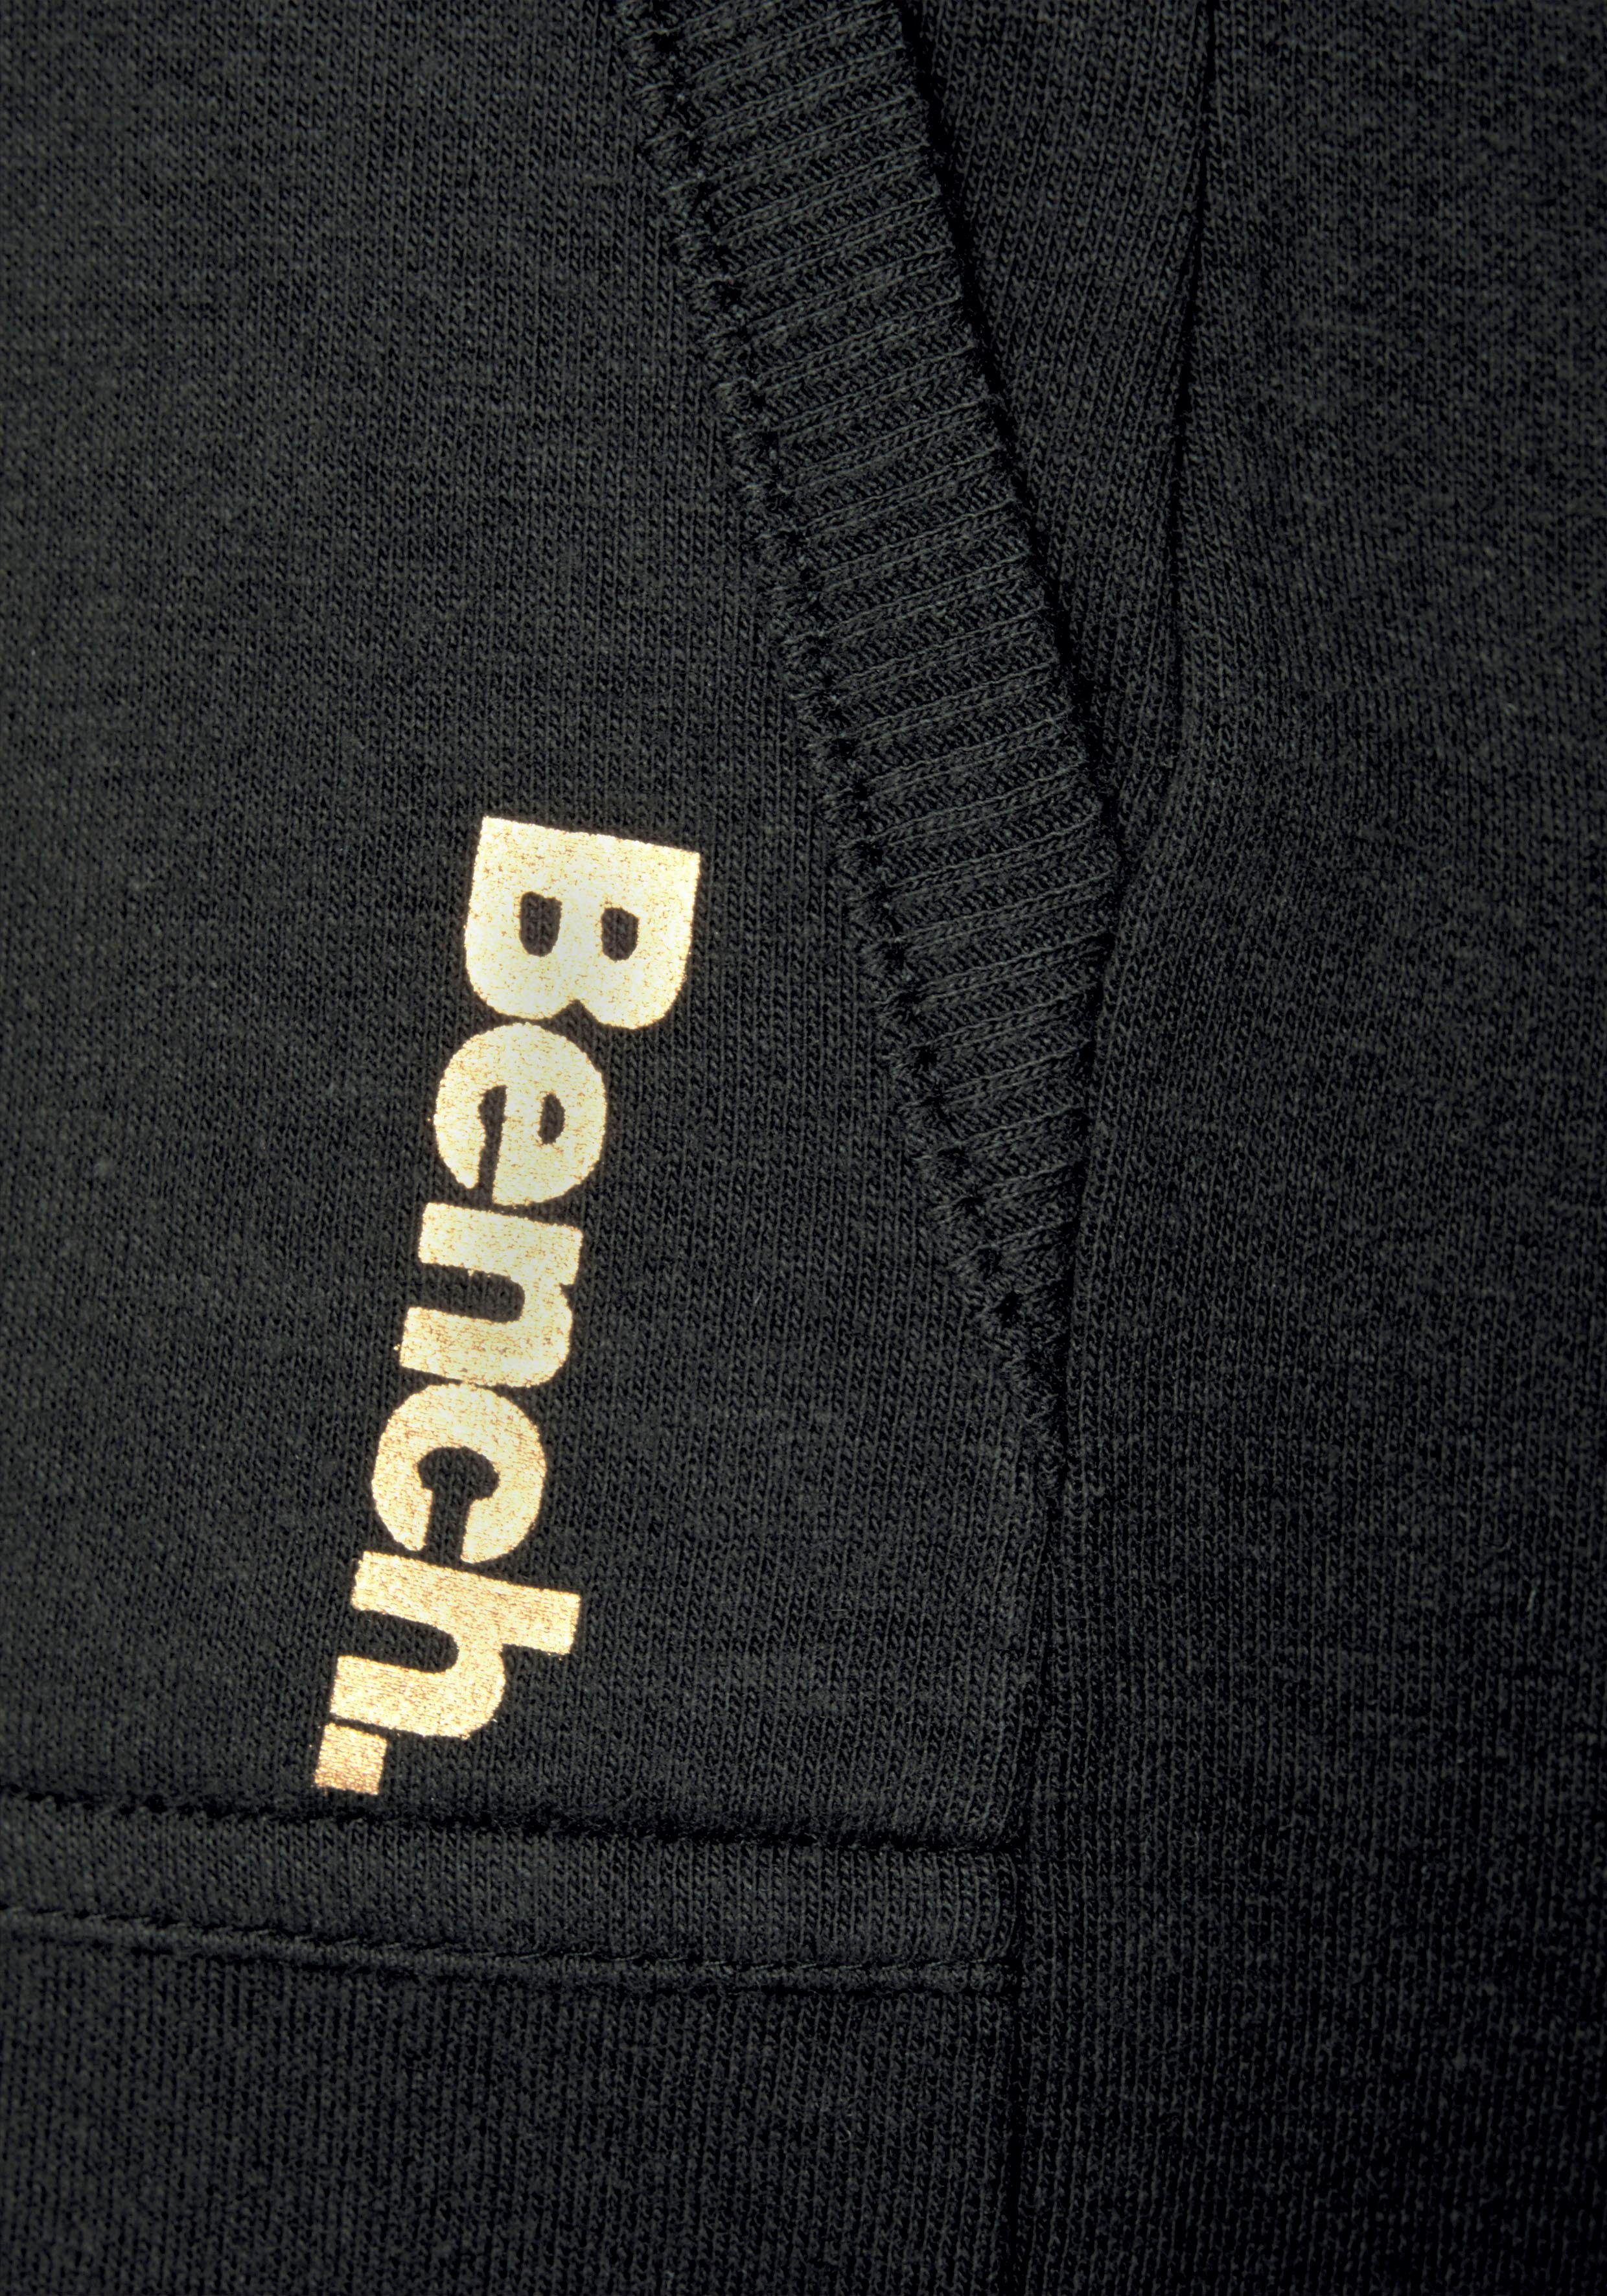 Beinsäumen seitlichen und -kurze Bench. Loungewear schwarz aufgeschlagenen Taschen Sweathose mit Bermudas